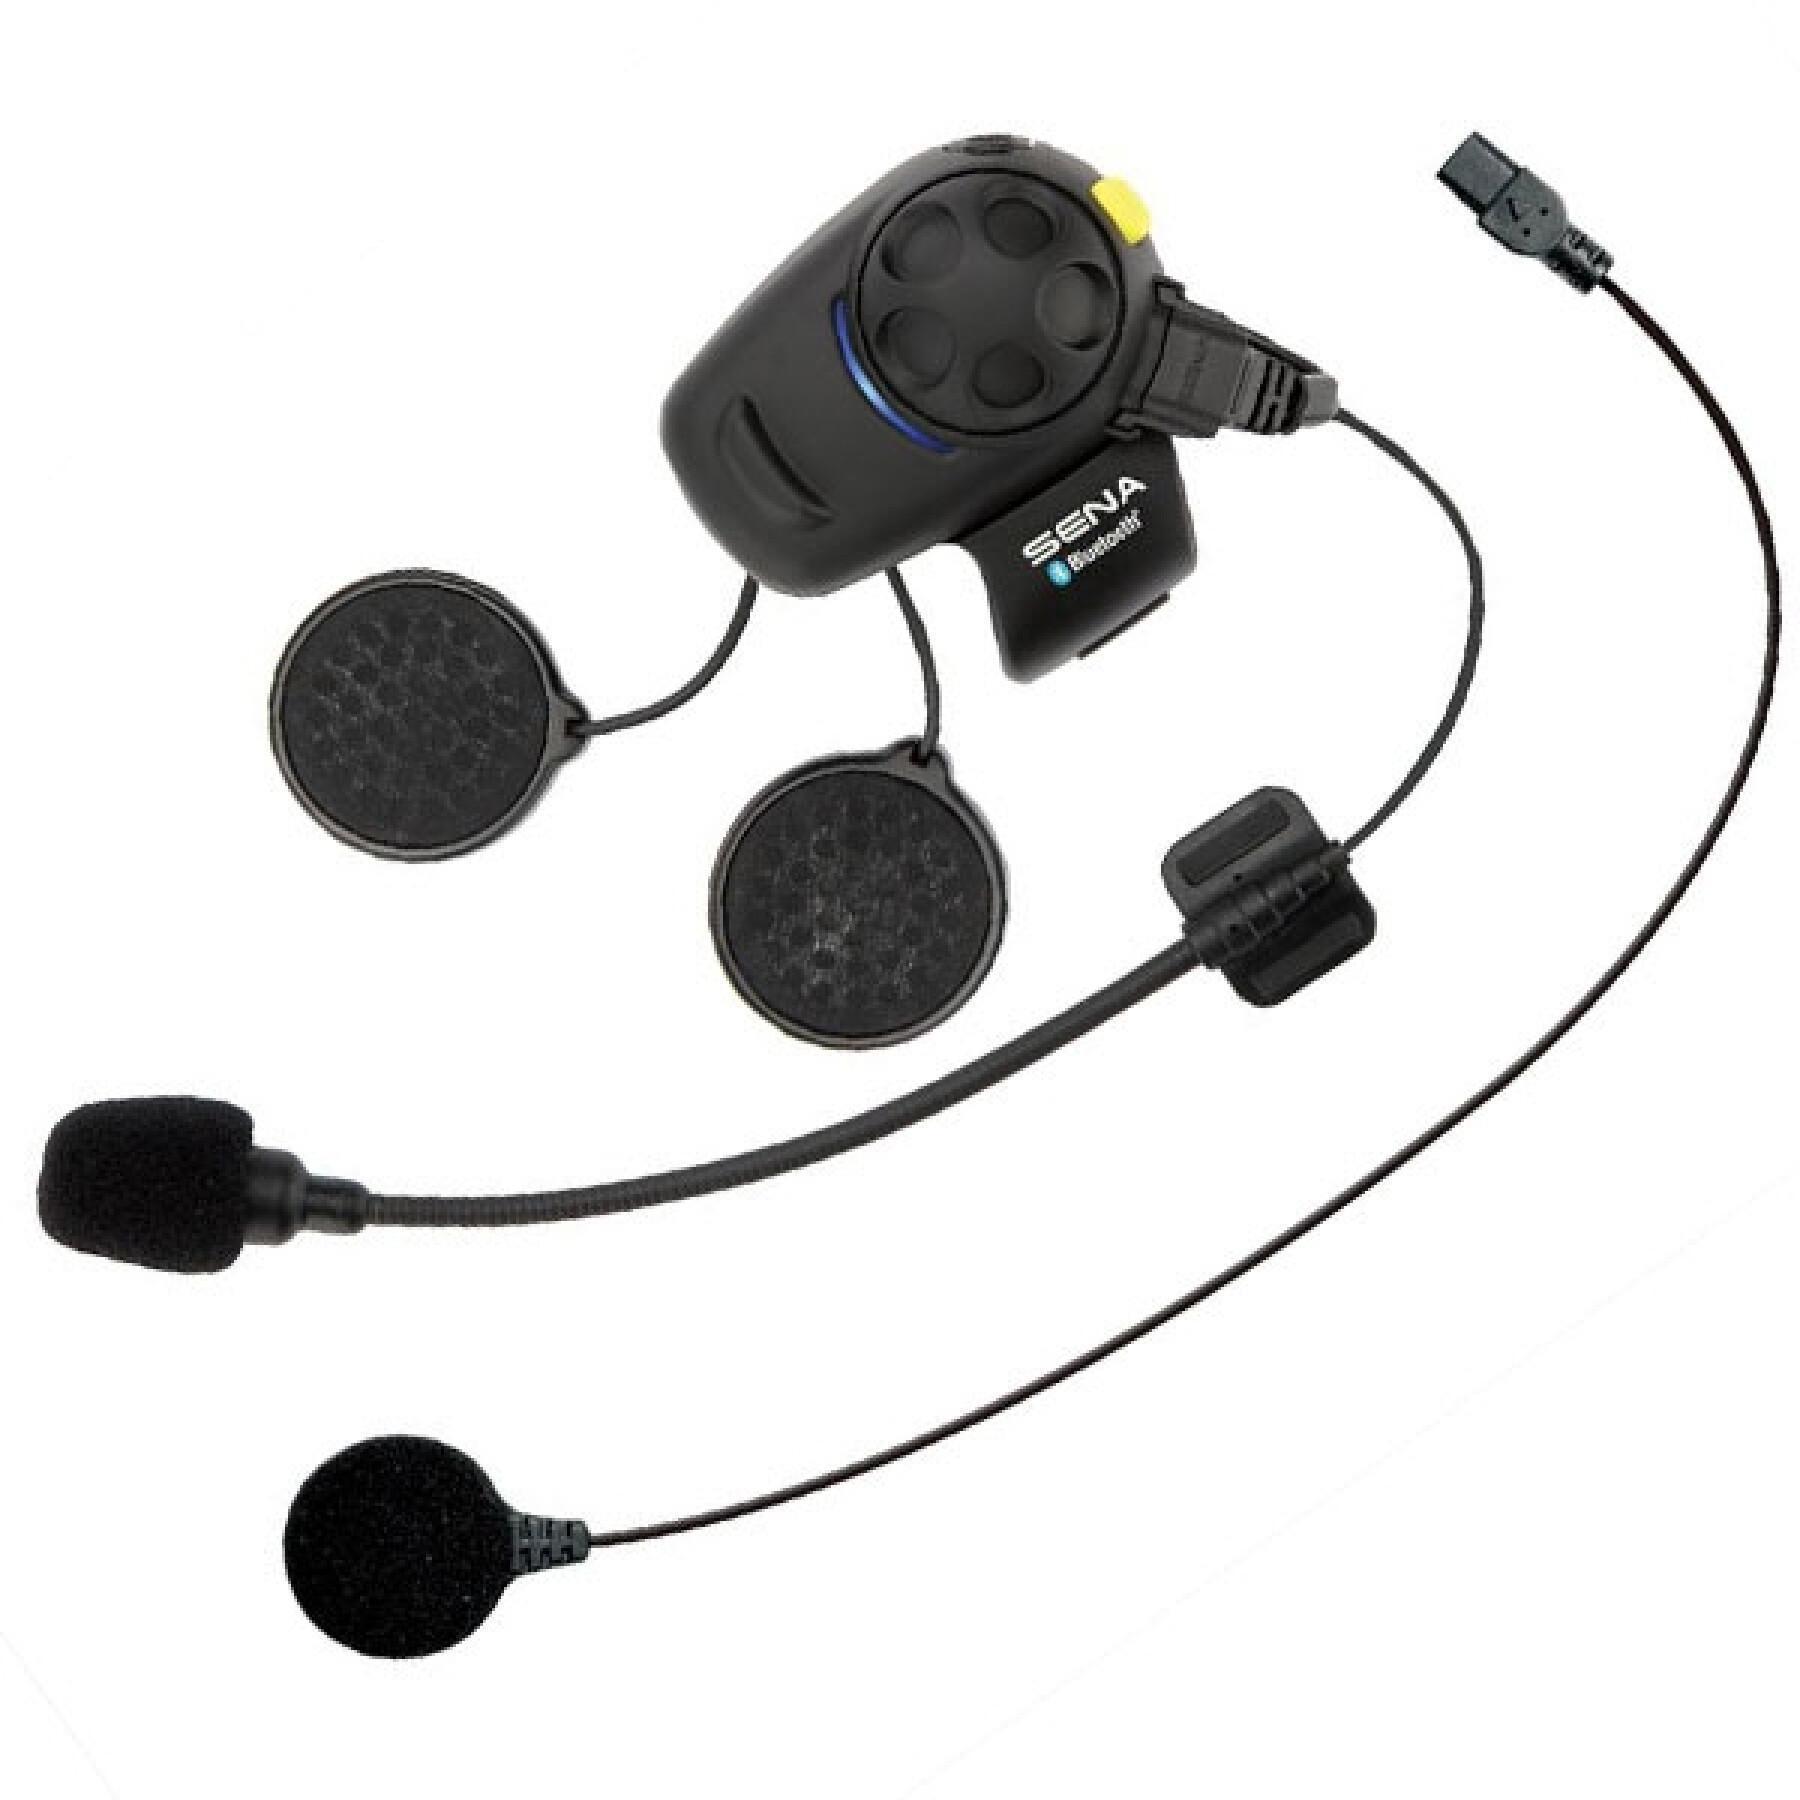 sena SMH5 kit téléphone bluetooth MP3 GPS intercom pour 2 casque moto  scooter jet intégral modulable